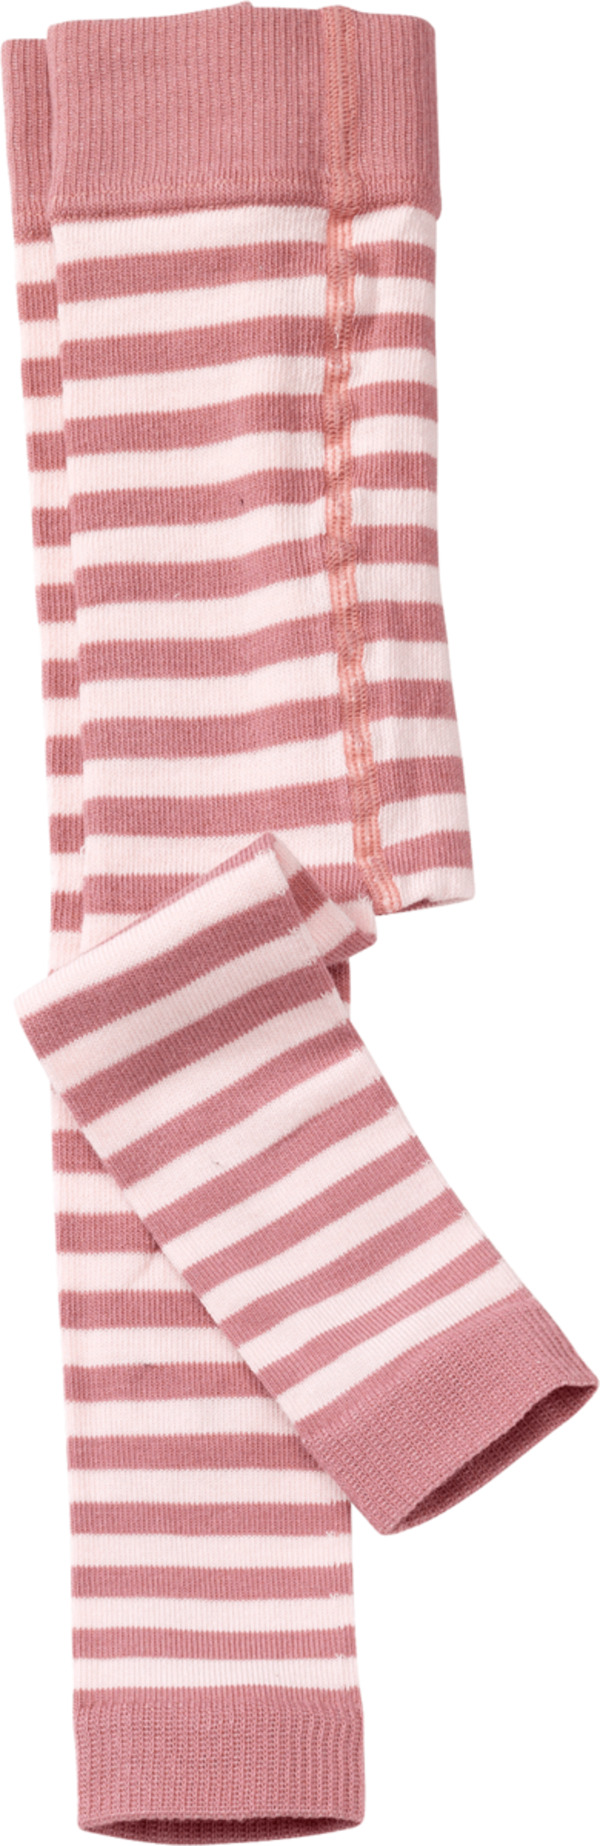 Bild 1 von ALANA Baby Leggings, Gr. 74/80, mit Bio-Baumwolle, rosa